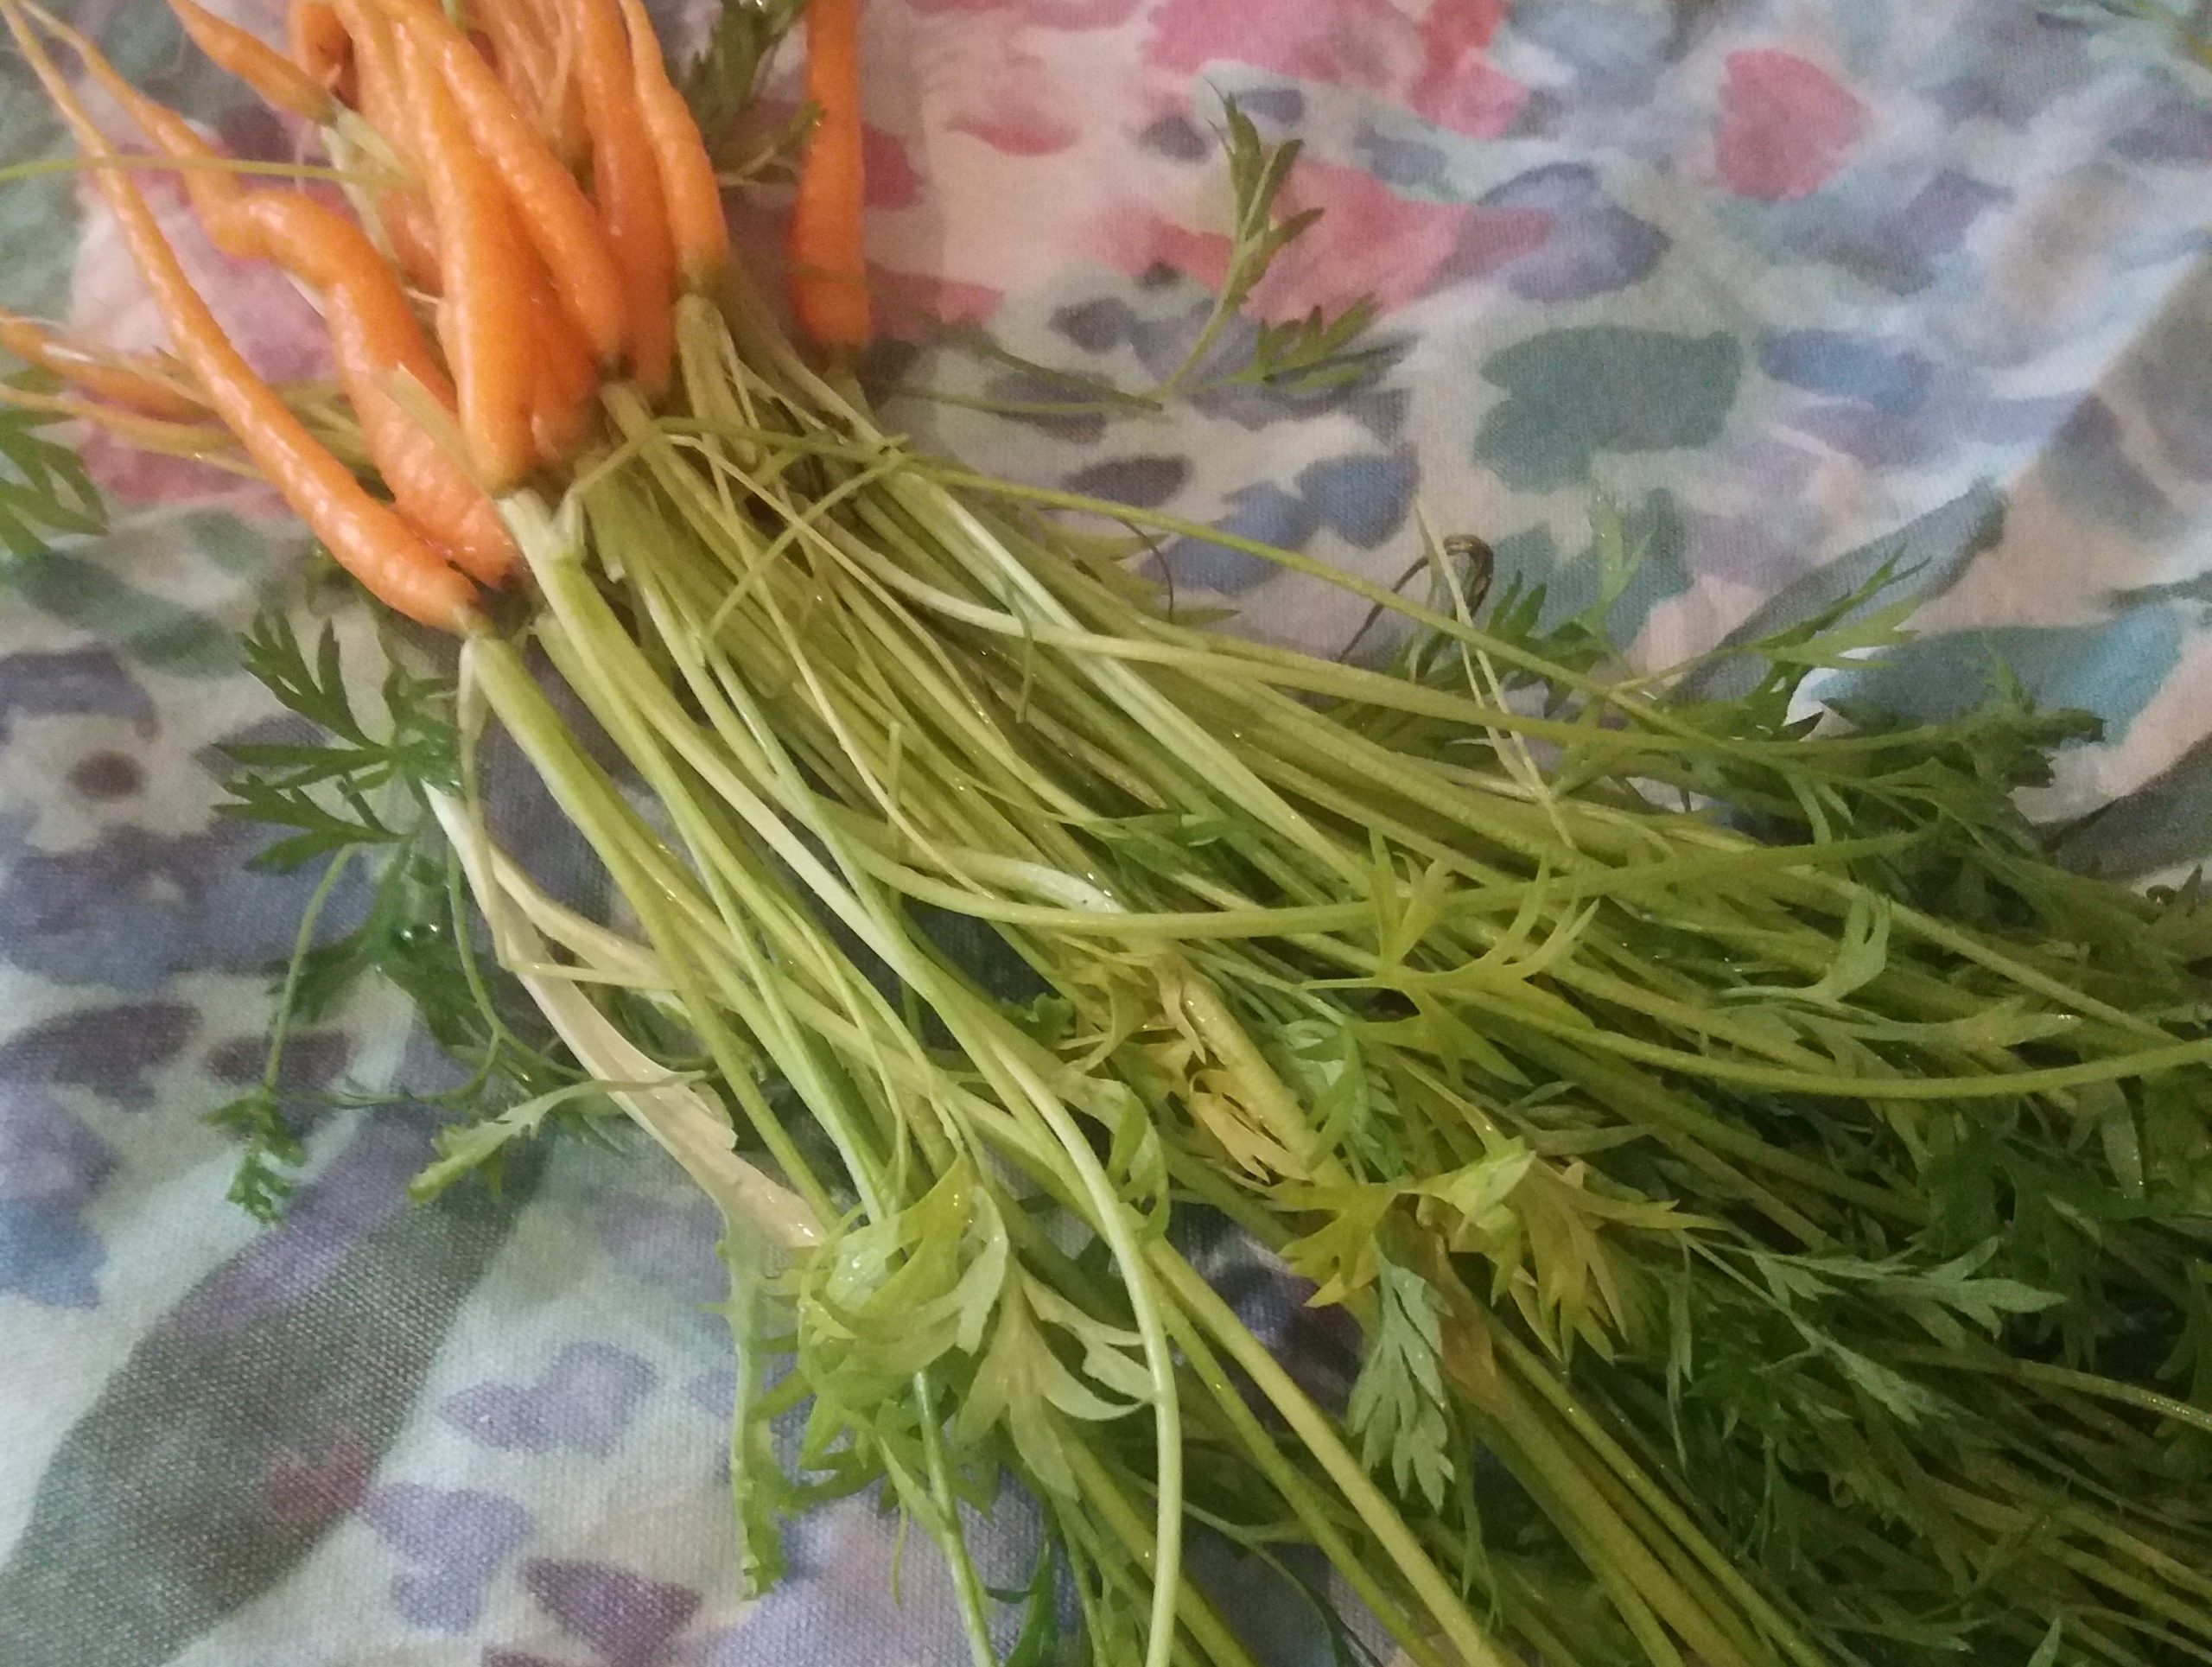 Carrot Top Pesto